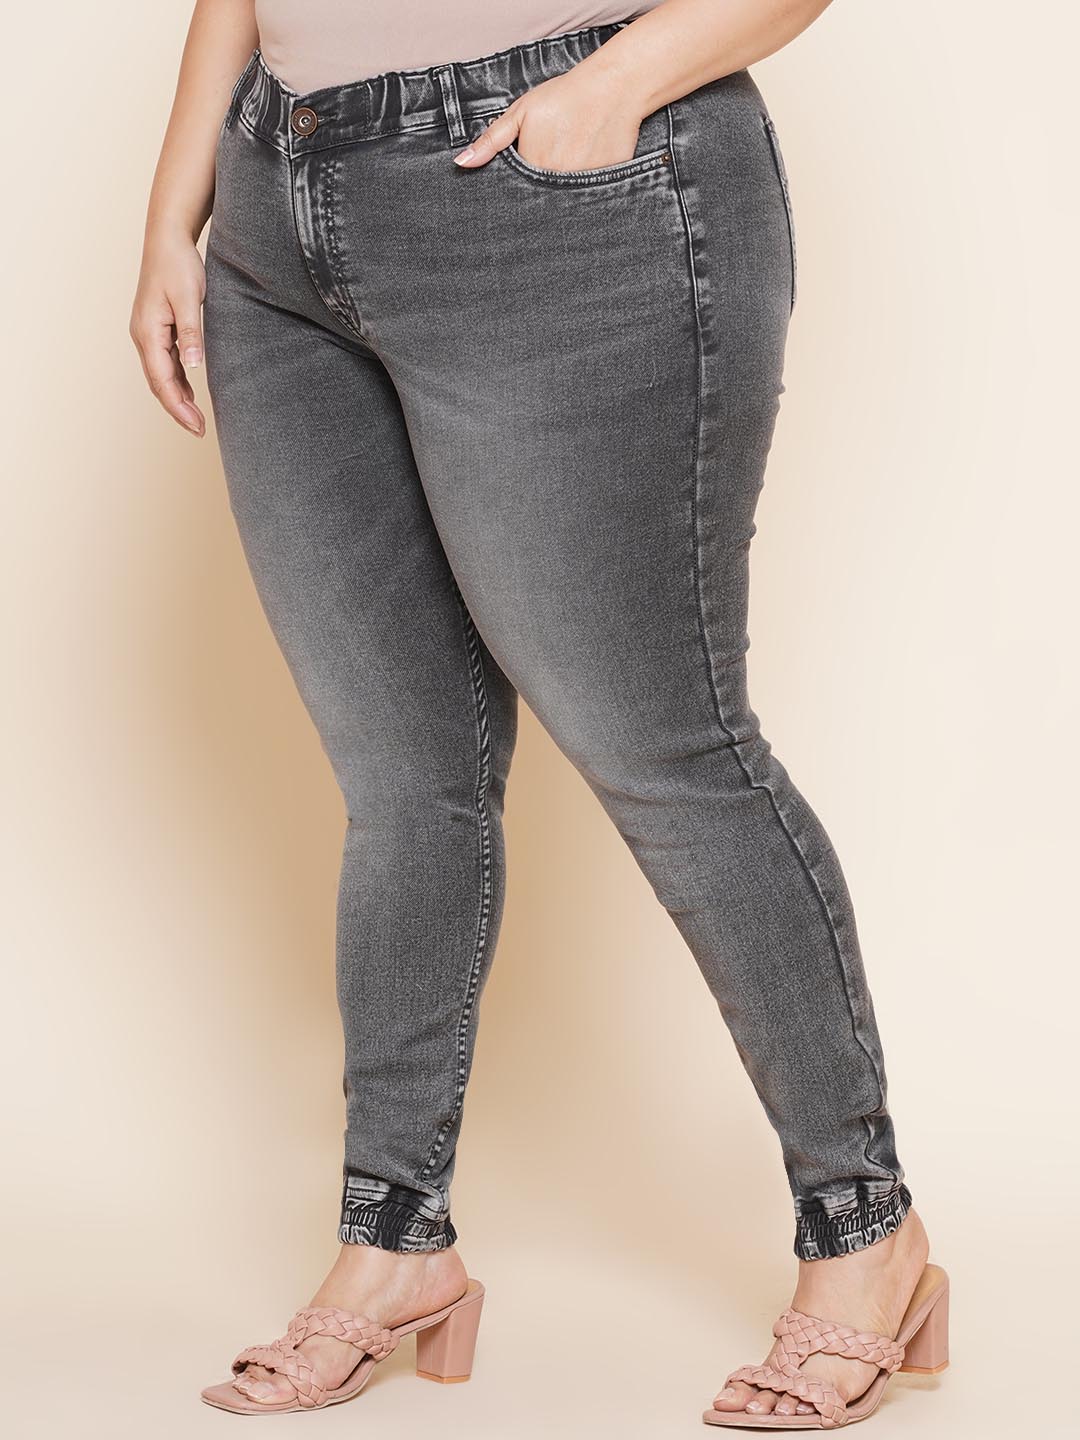 bottomwear_kiaahvi/jeans/KIJ6011/kij6011-4.jpg